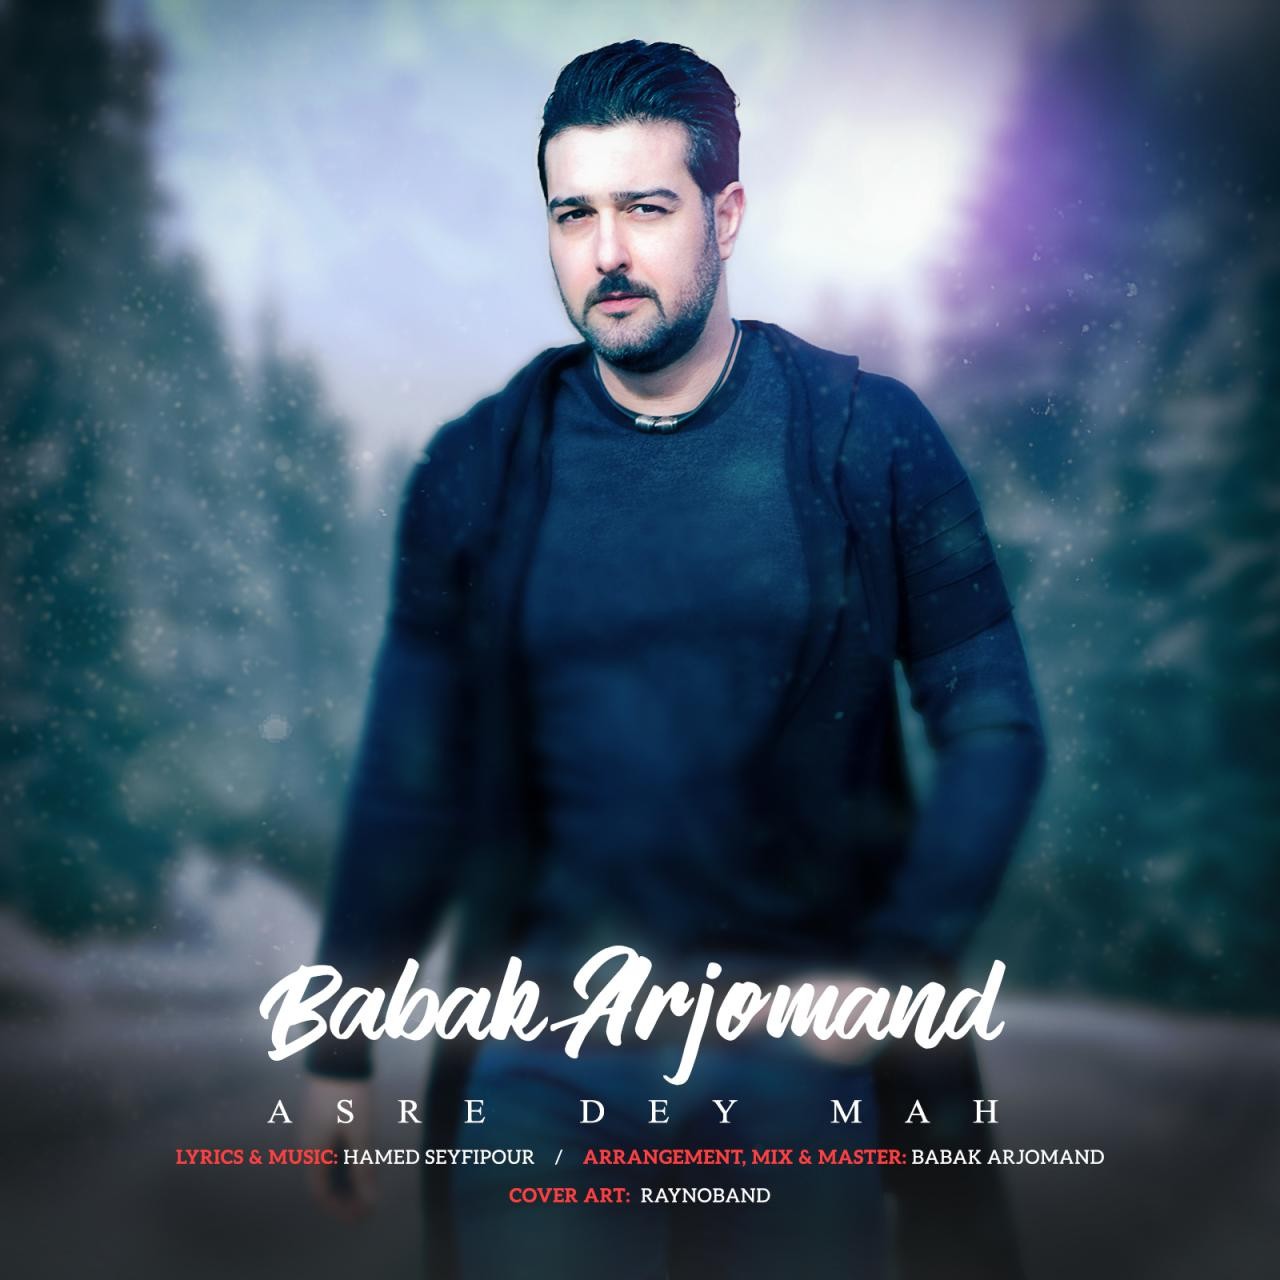  دانلود آهنگ جدید بابک ارجمند - عصر دی ماه | Download New Music By Babak Arjomand - Asre Dey Mah